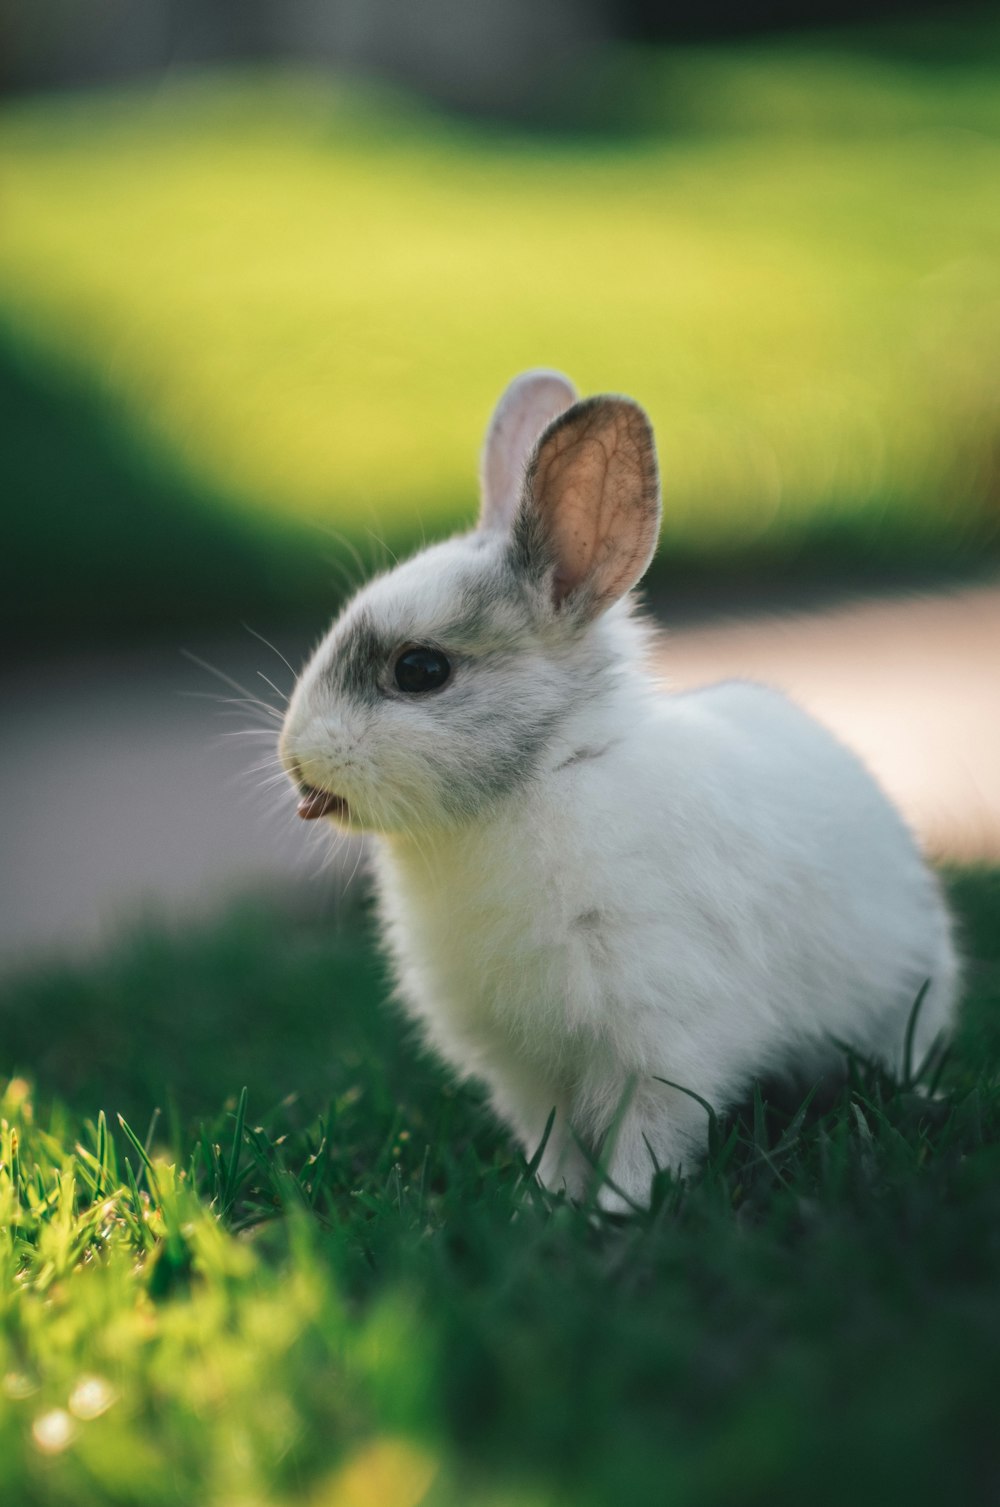 lapin blanc sur l’herbe verte pendant la journée